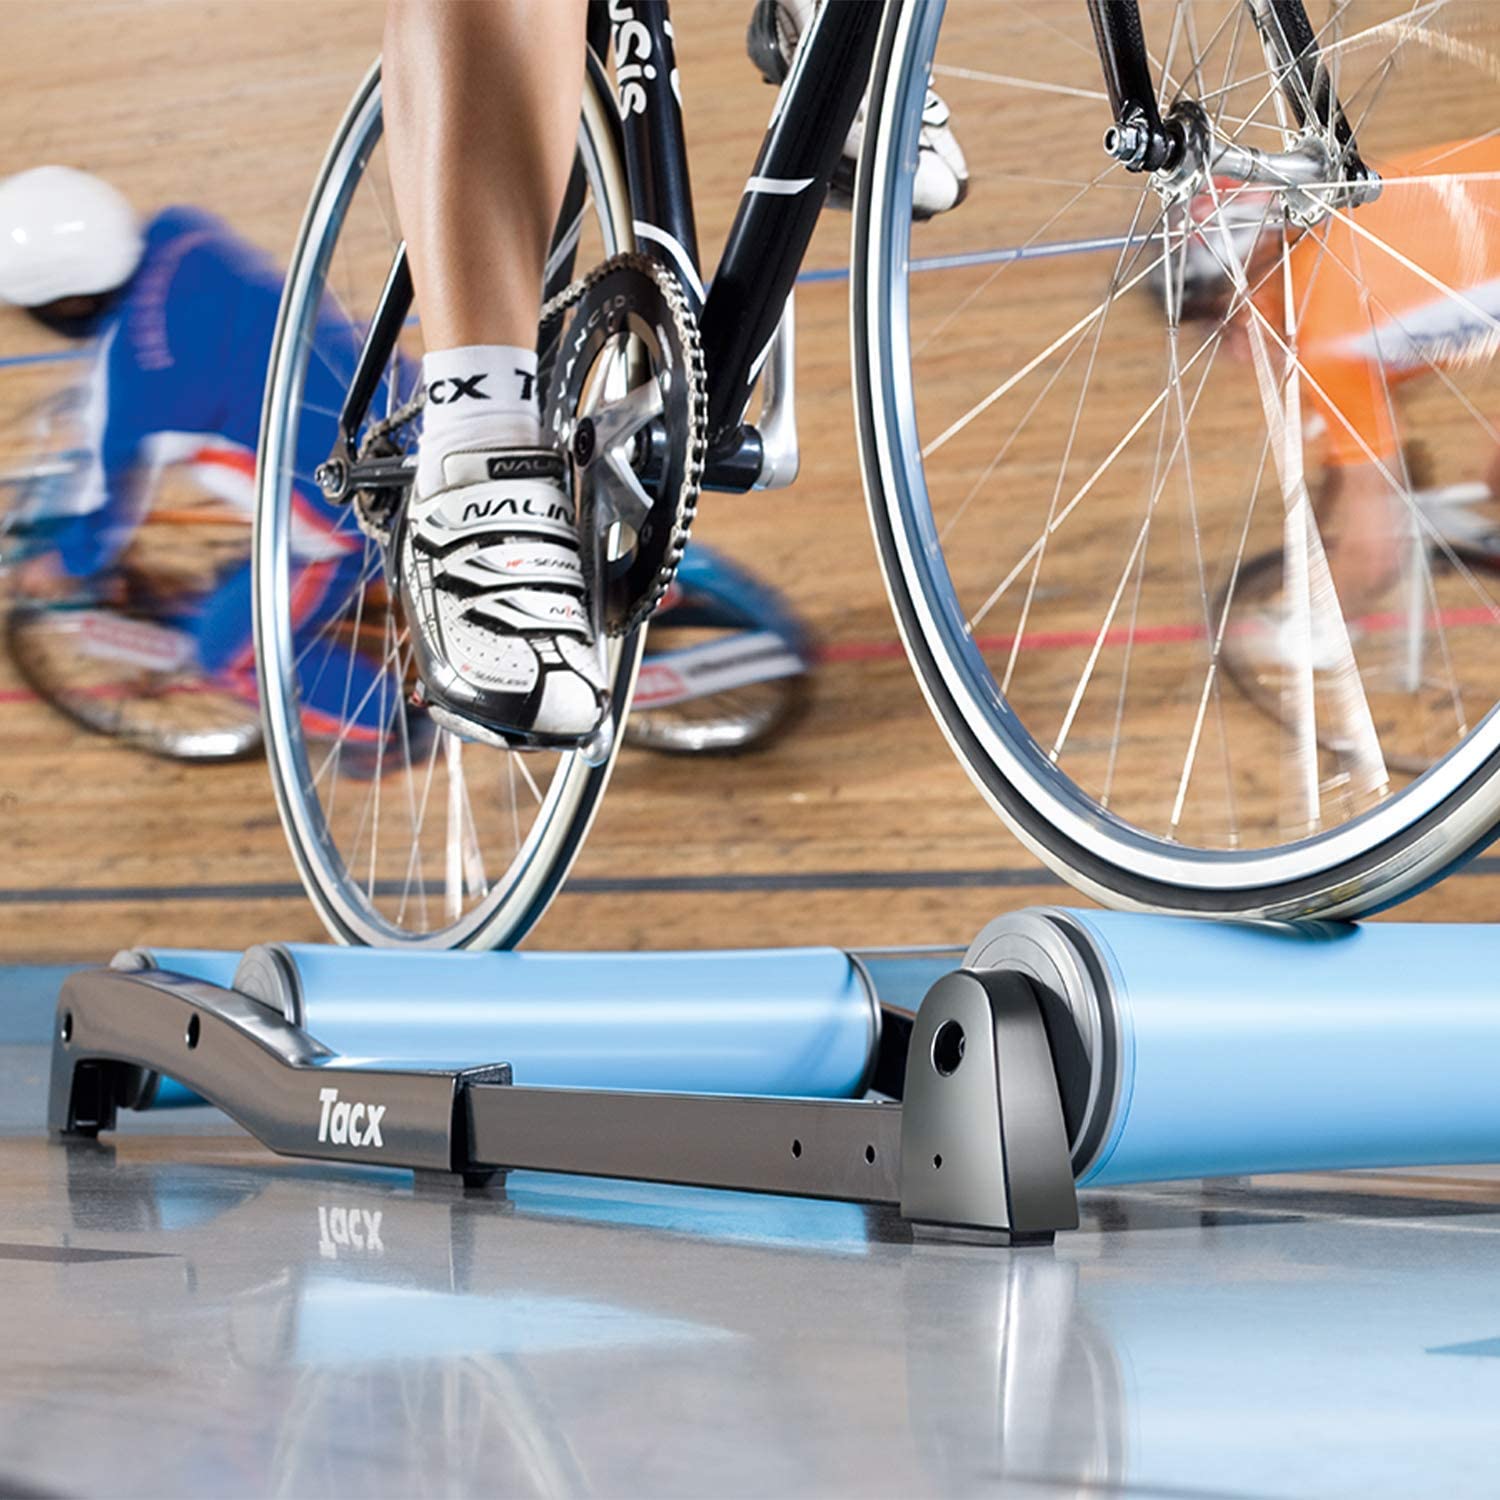 8840円 【74%OFF!】 CycleOps 三本ローラー 自転車トレーニング用